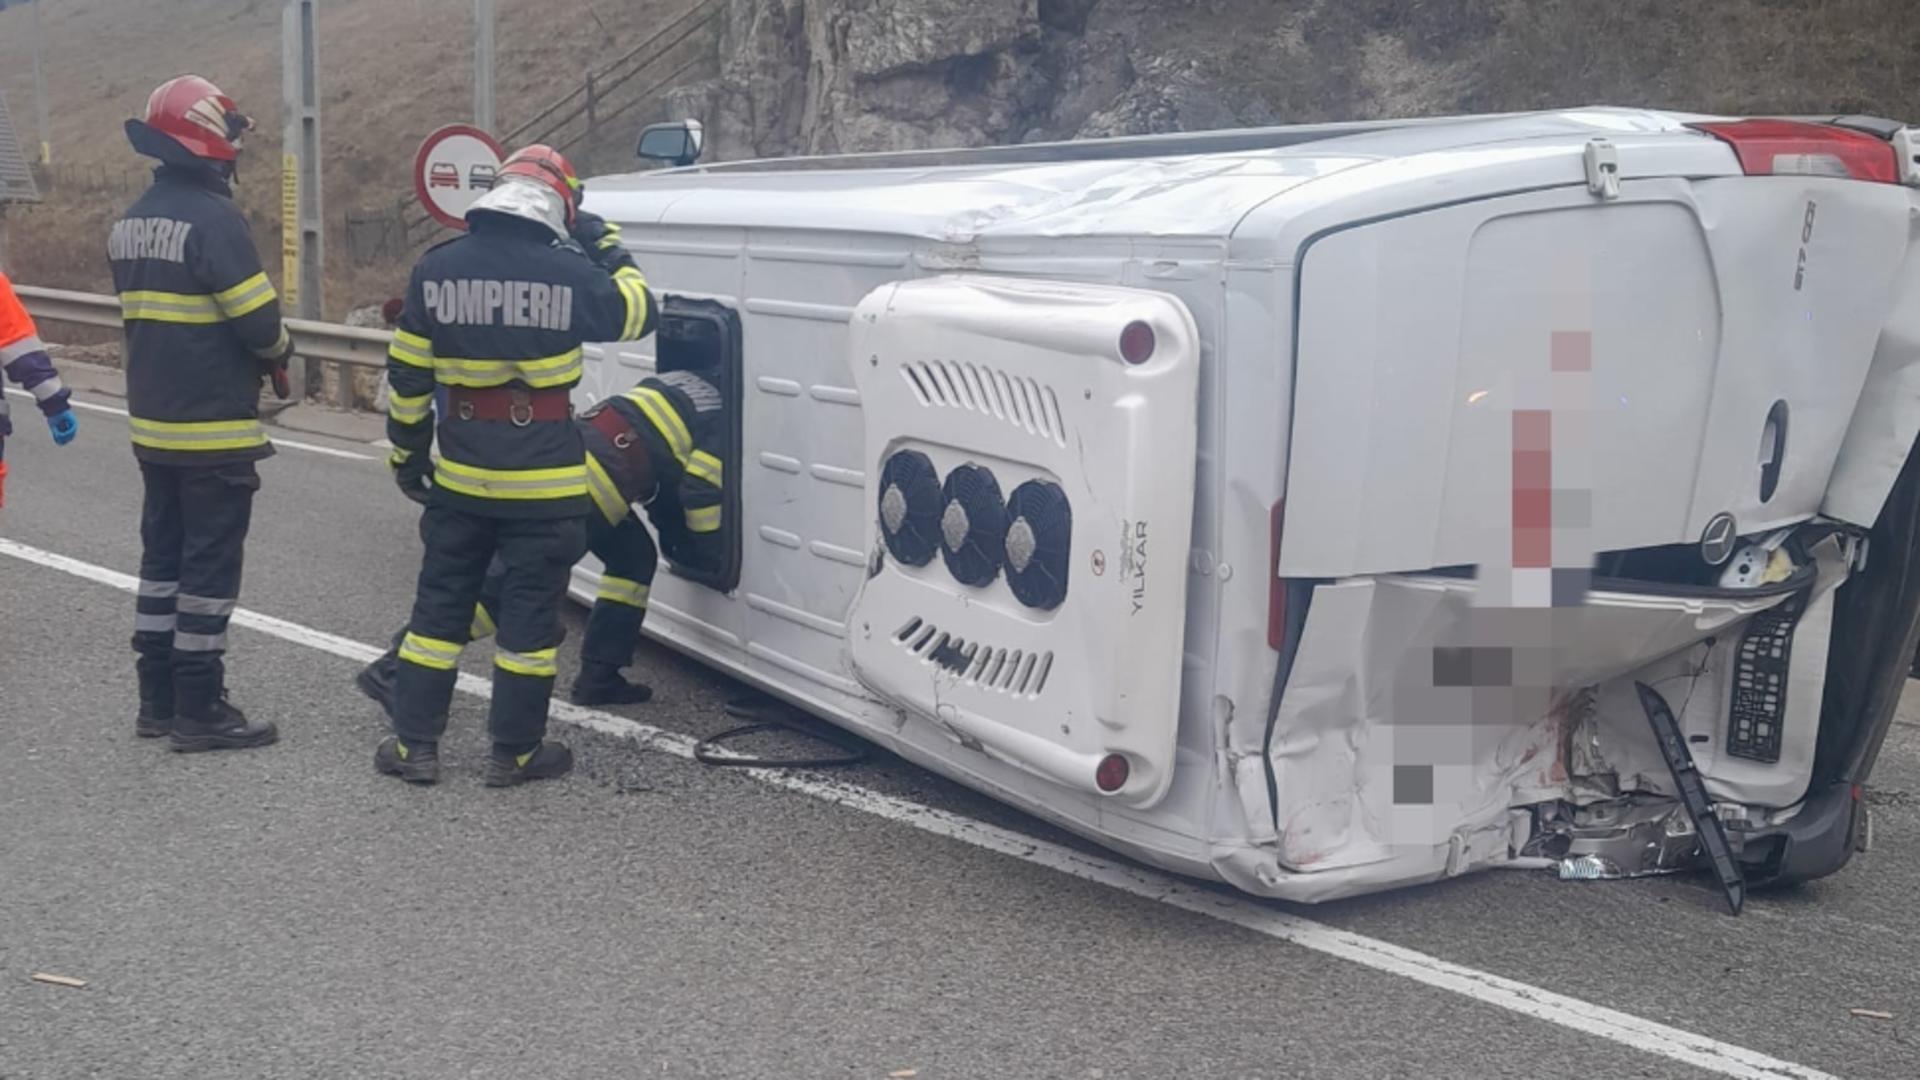 Impact violent, în județul Suceava, între un microbuz și un camion.